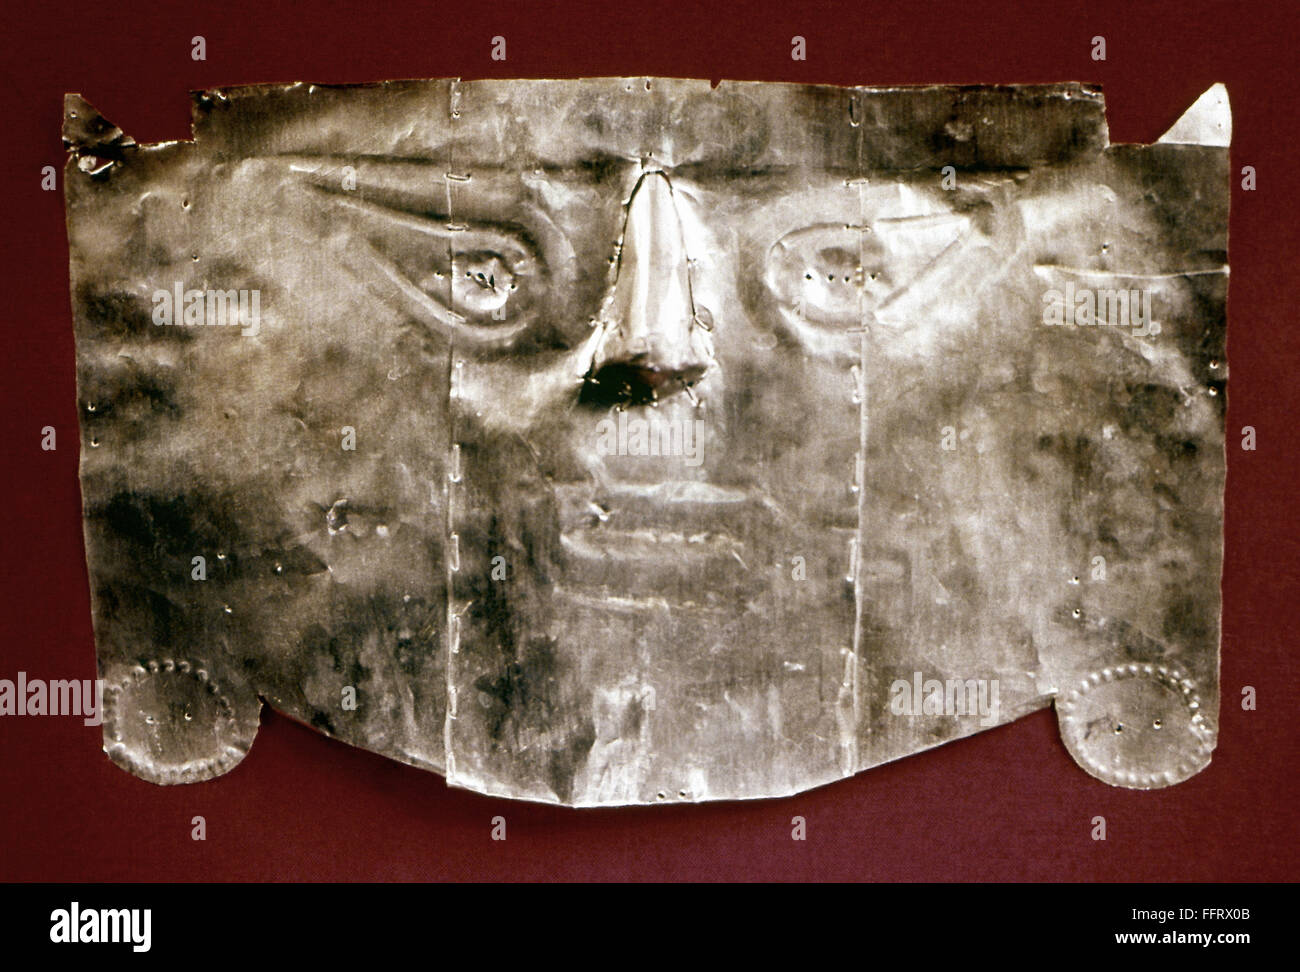 PERU: GOLD MUMMY MASK. /nGold mummy mask created by the Chimu, Moche, or Inca civilization at Lambayeque, Peru. Stock Photo